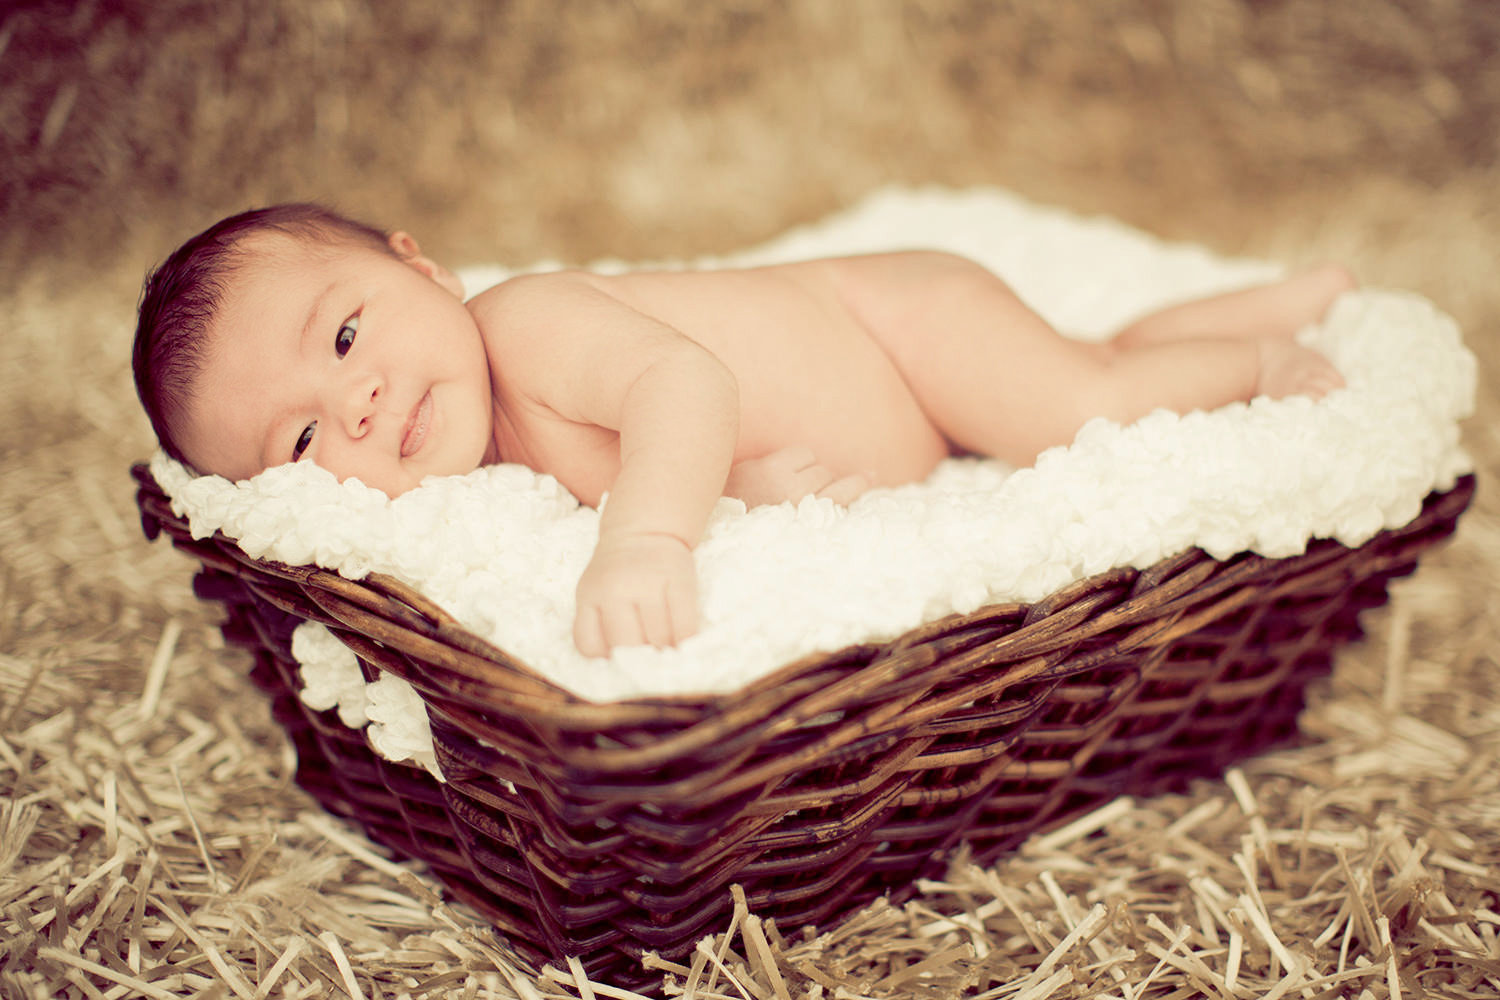 san diego newborn photographer | newborn sleeping in wicker basket with white blanket